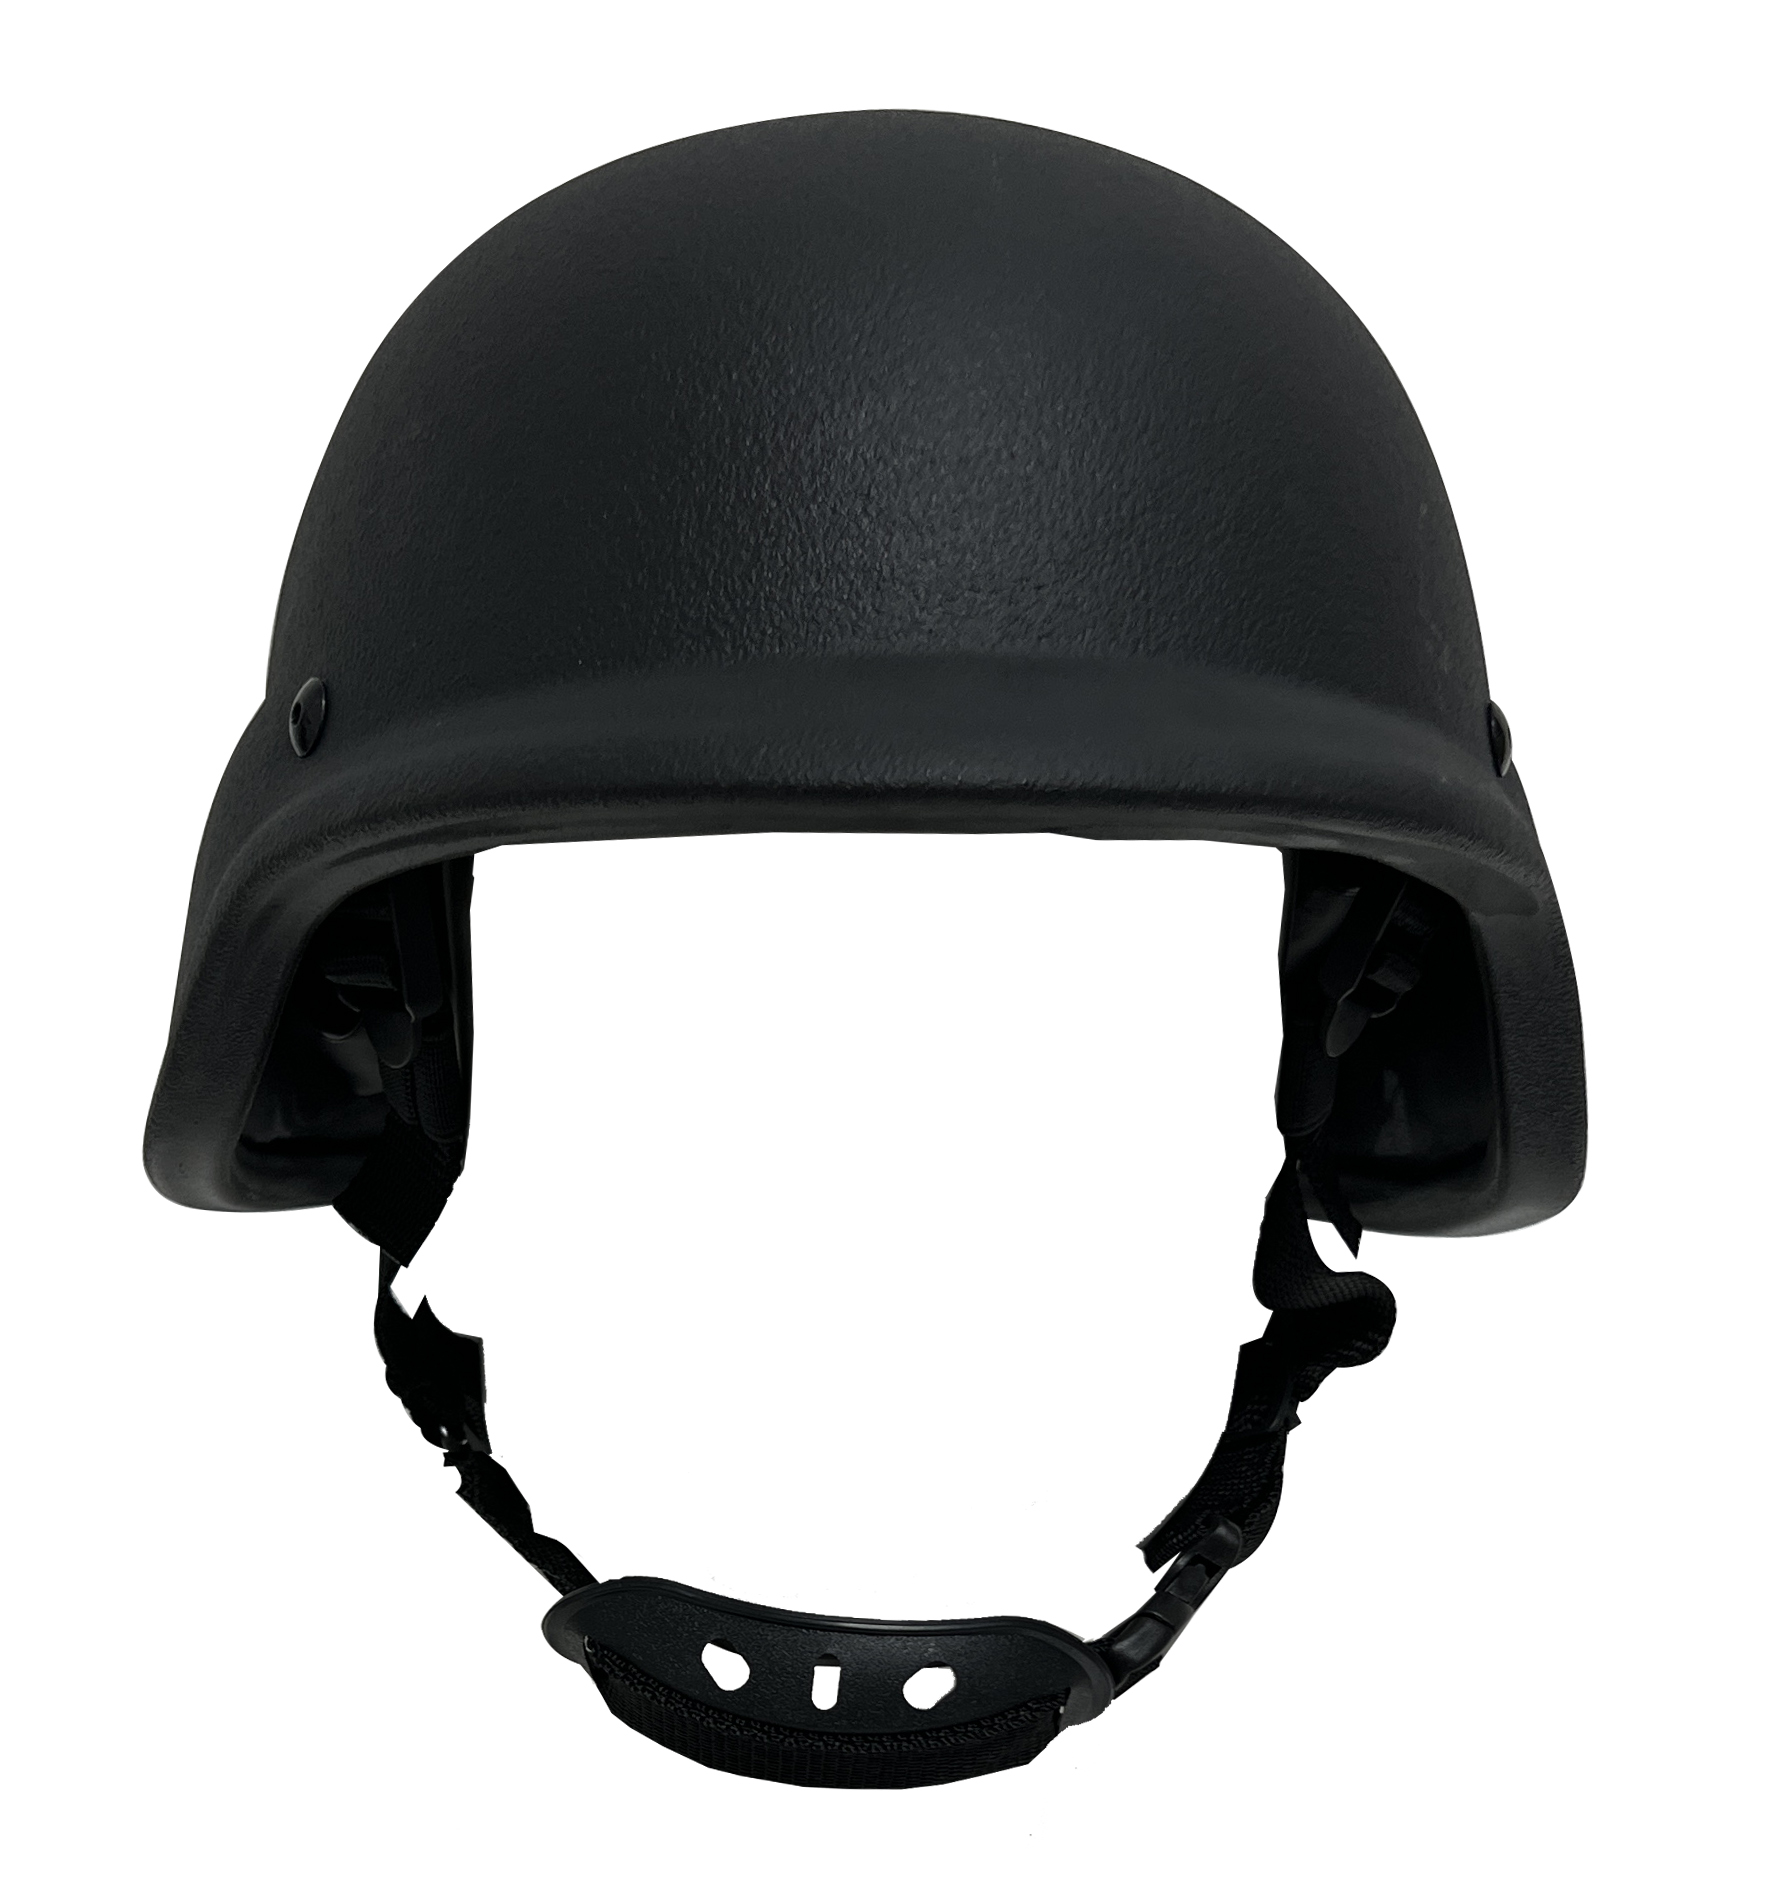 Military PASGT M88 Level IIIA PE Aramid Ballistic Helmet 